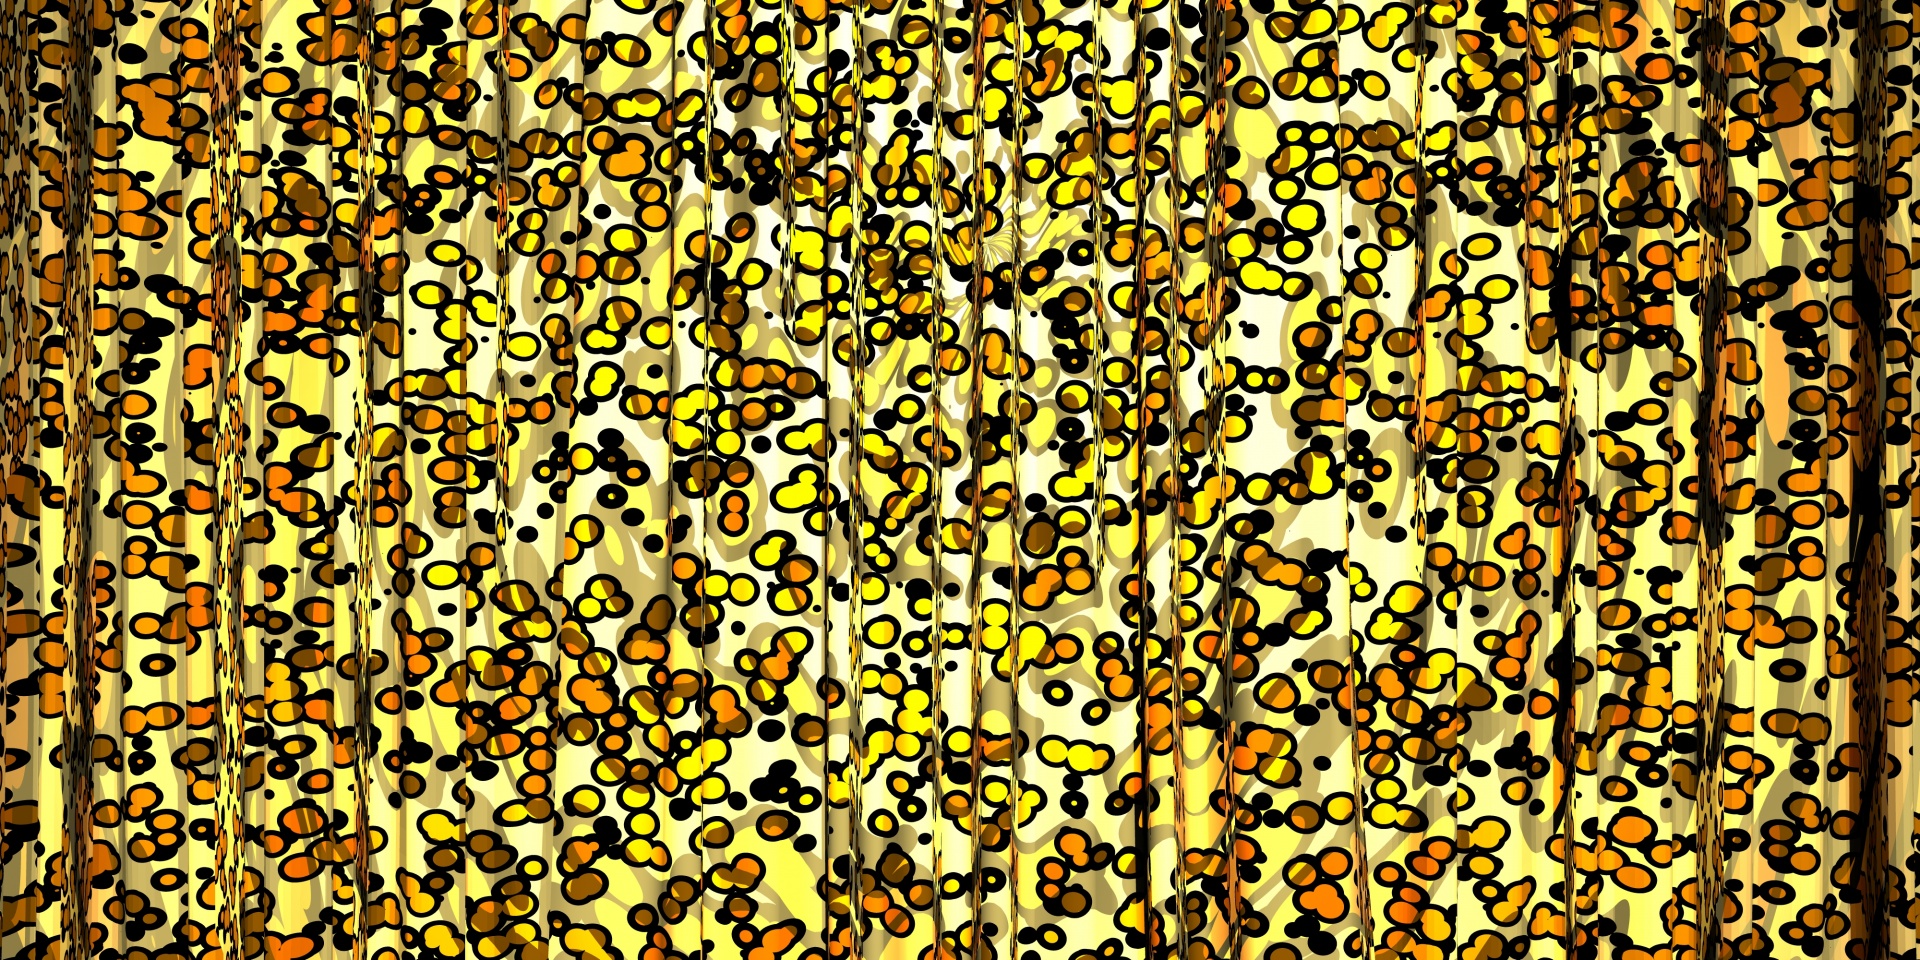 Leopard Pattern Wallpaper Free Photo - Art - HD Wallpaper 